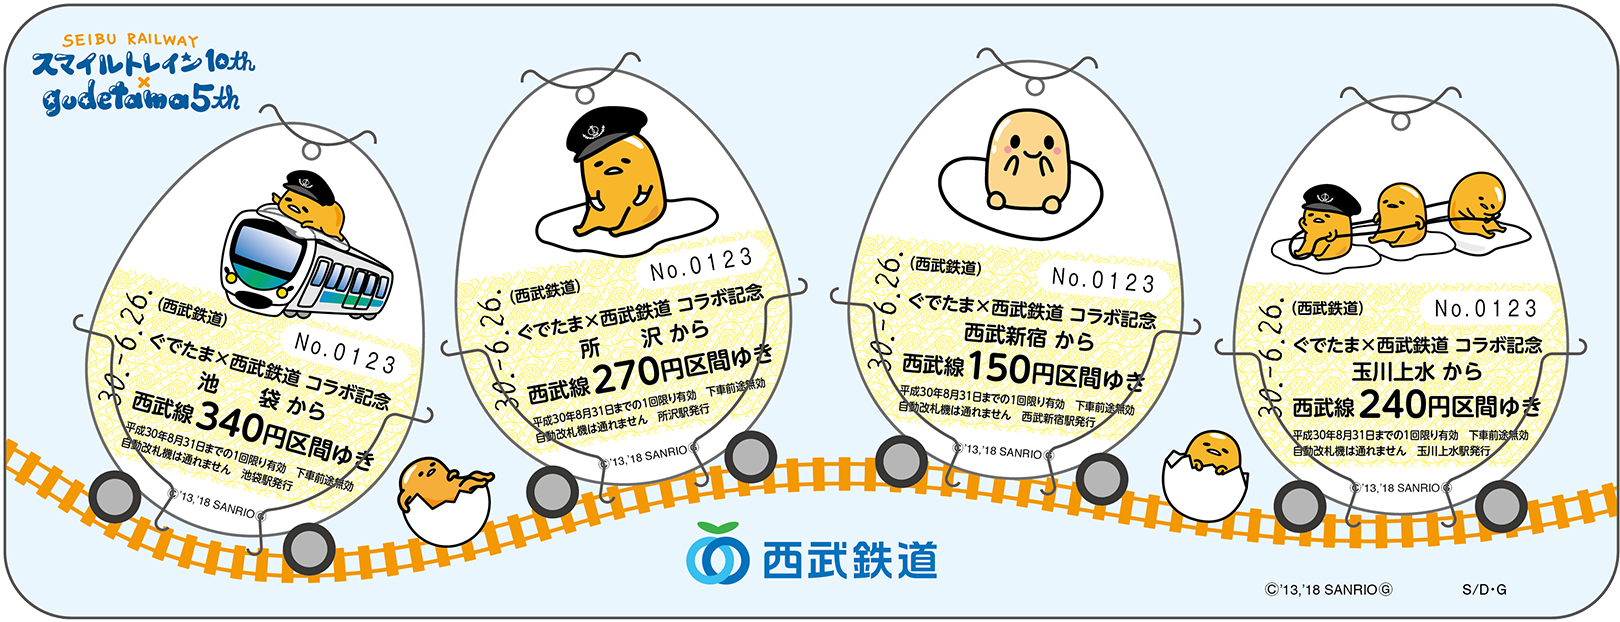 たまご型の乗車券のイメージ画像